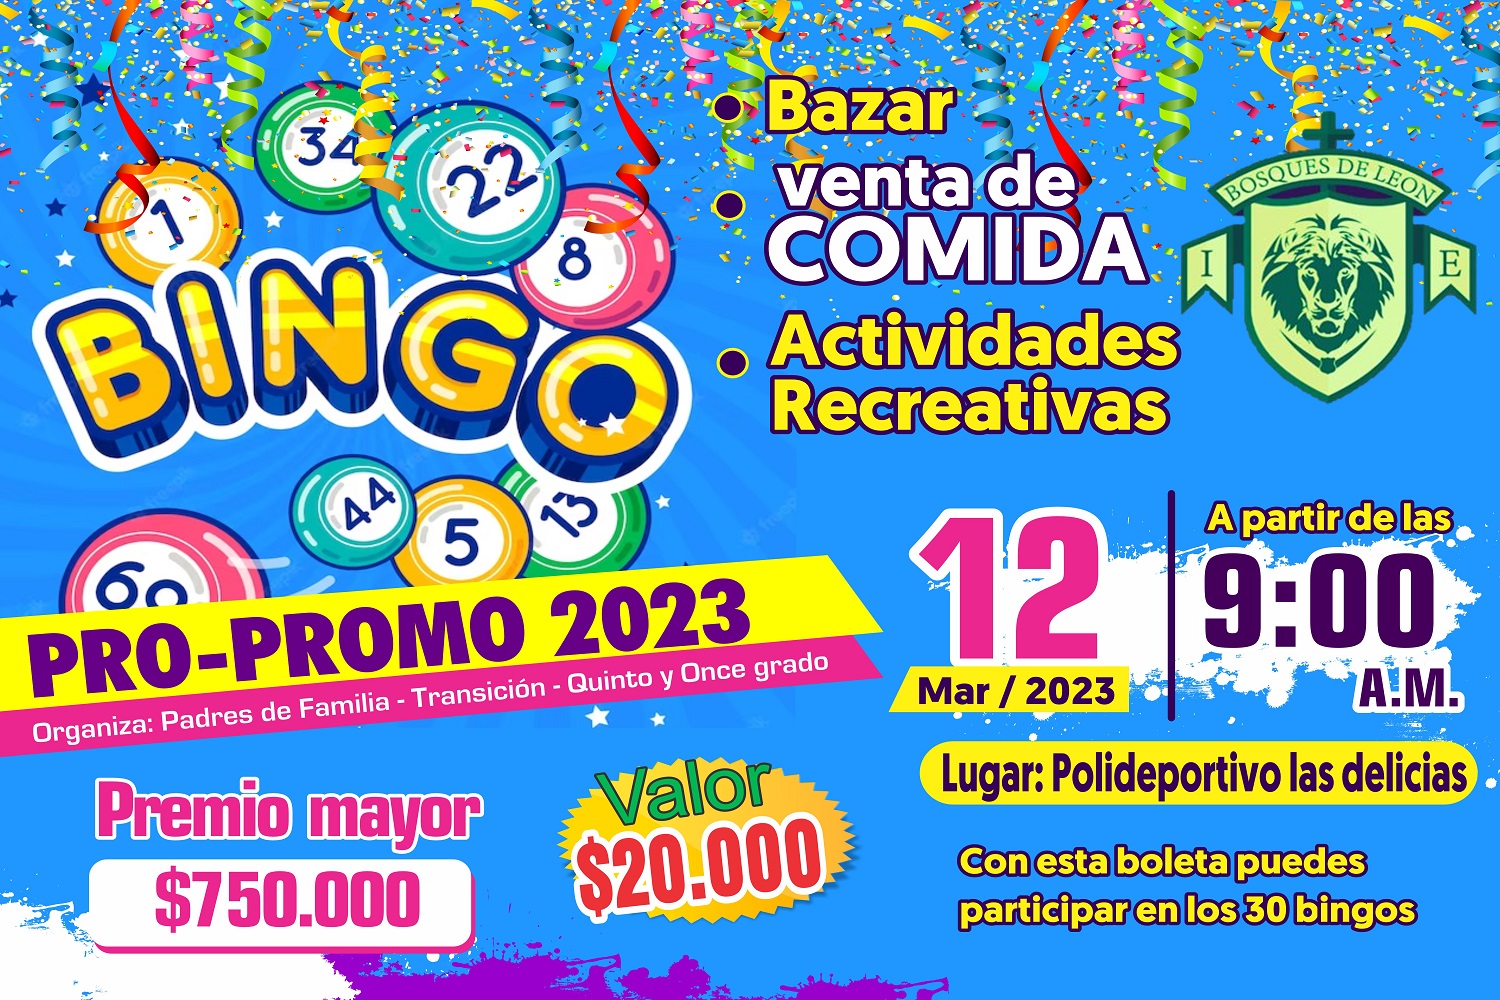 Bingo Pro-Promo 2023